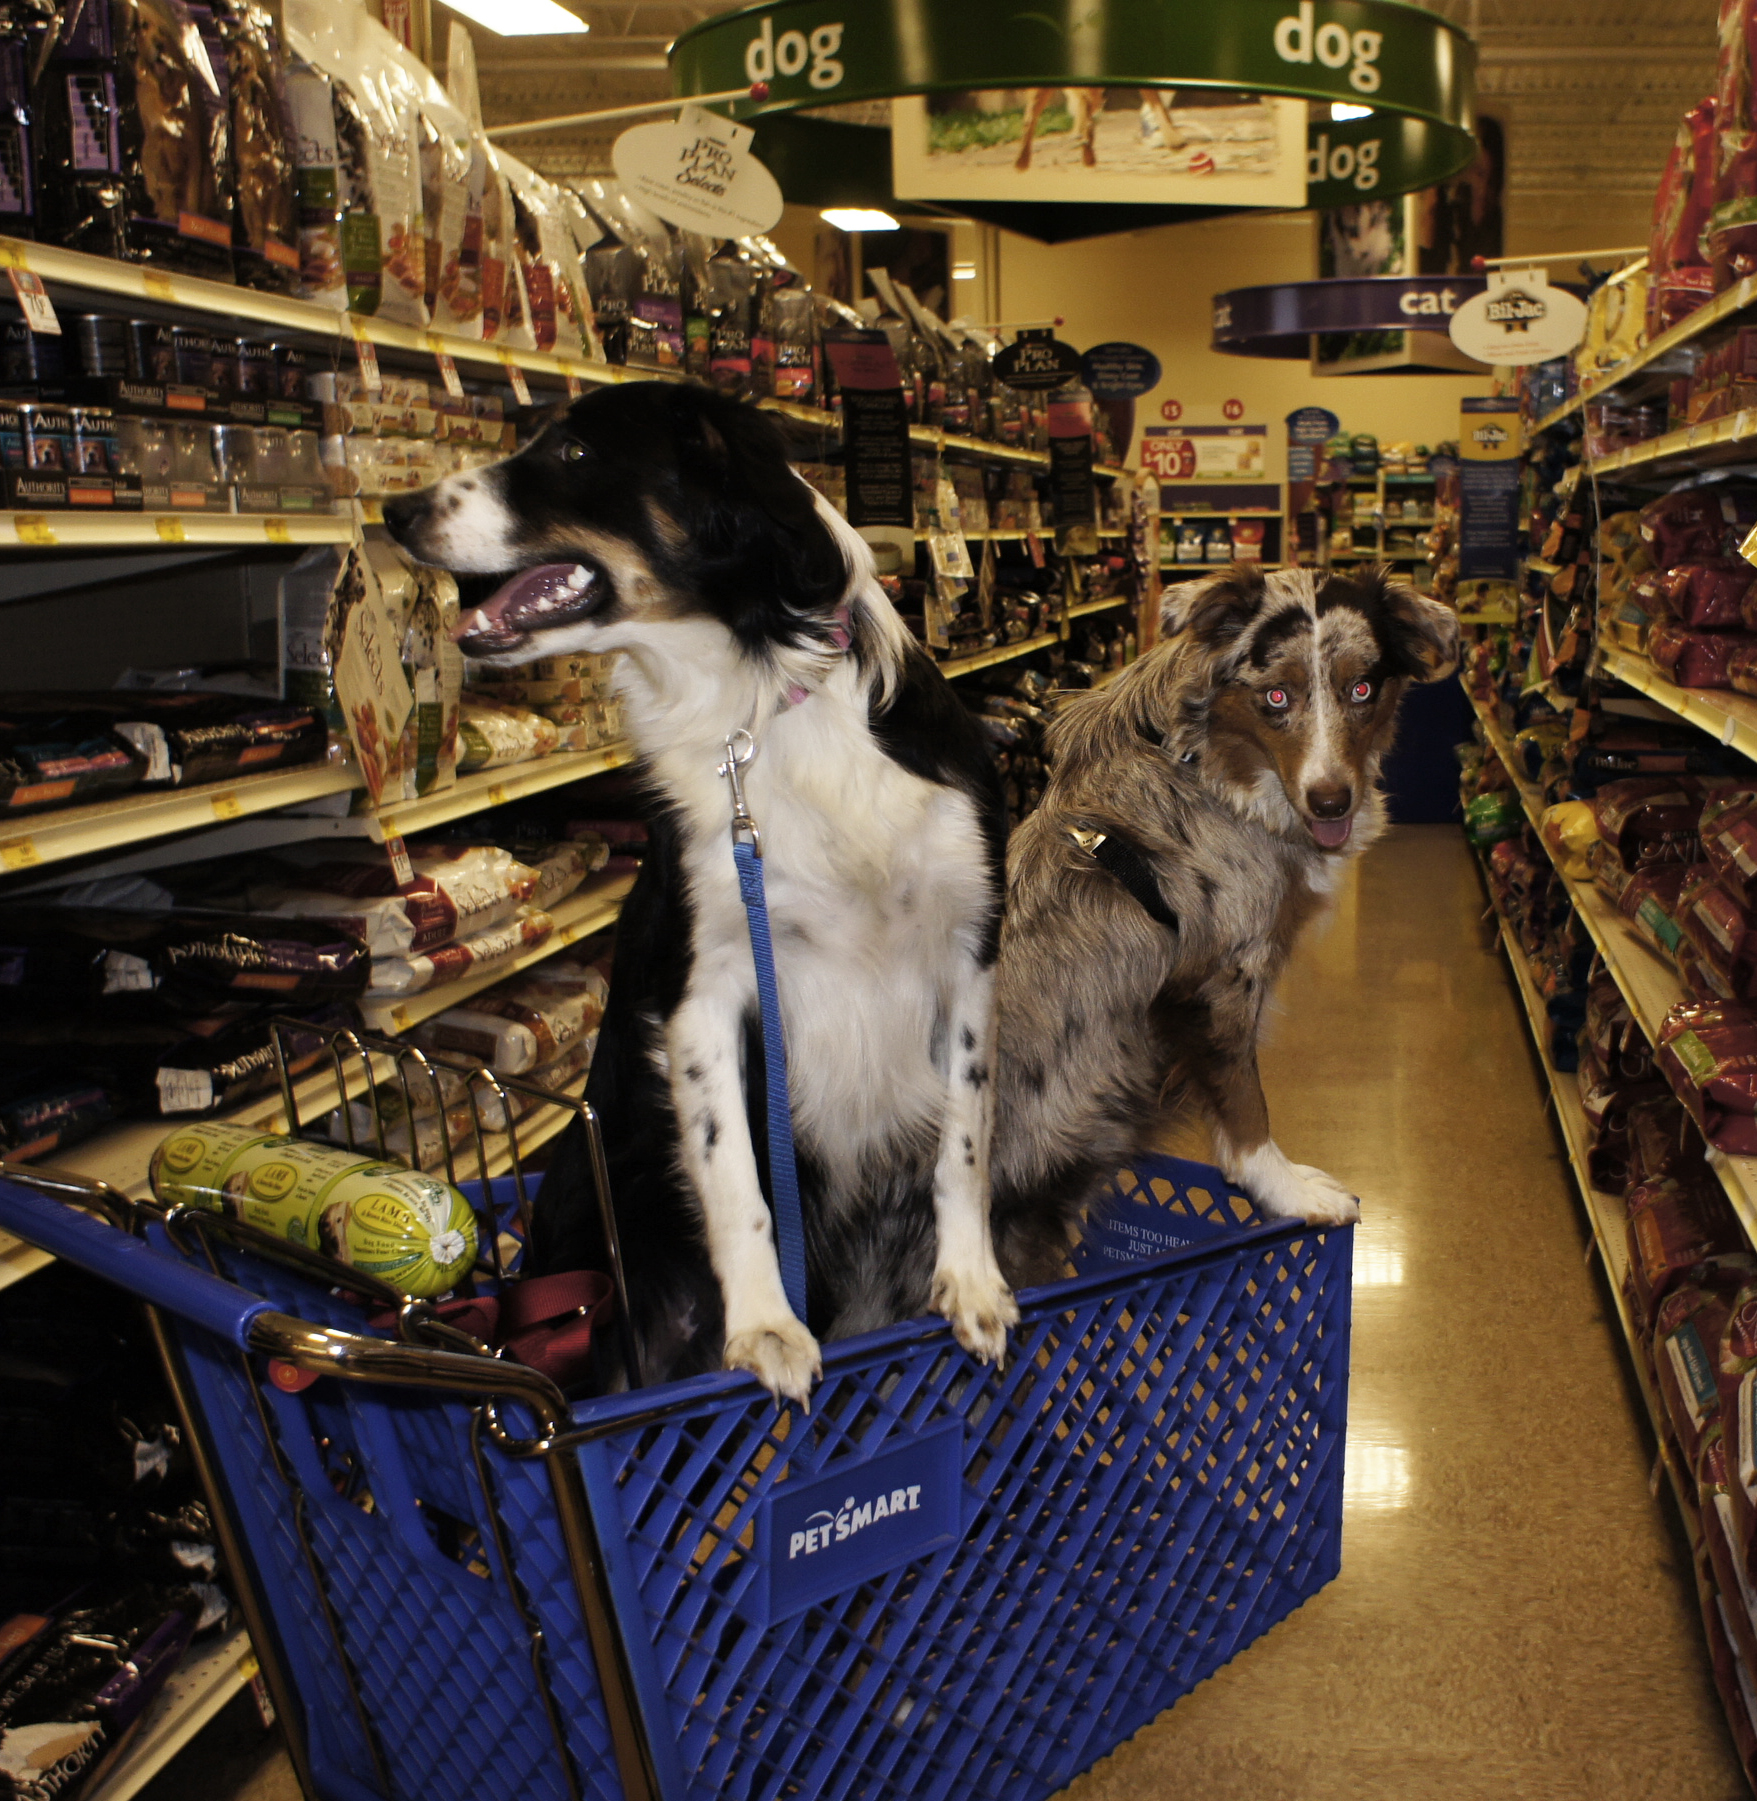 تُظهر الصورة كلبين يركبان عربة تسوق داخل متجر ذكي للحيوانات الأليفة.